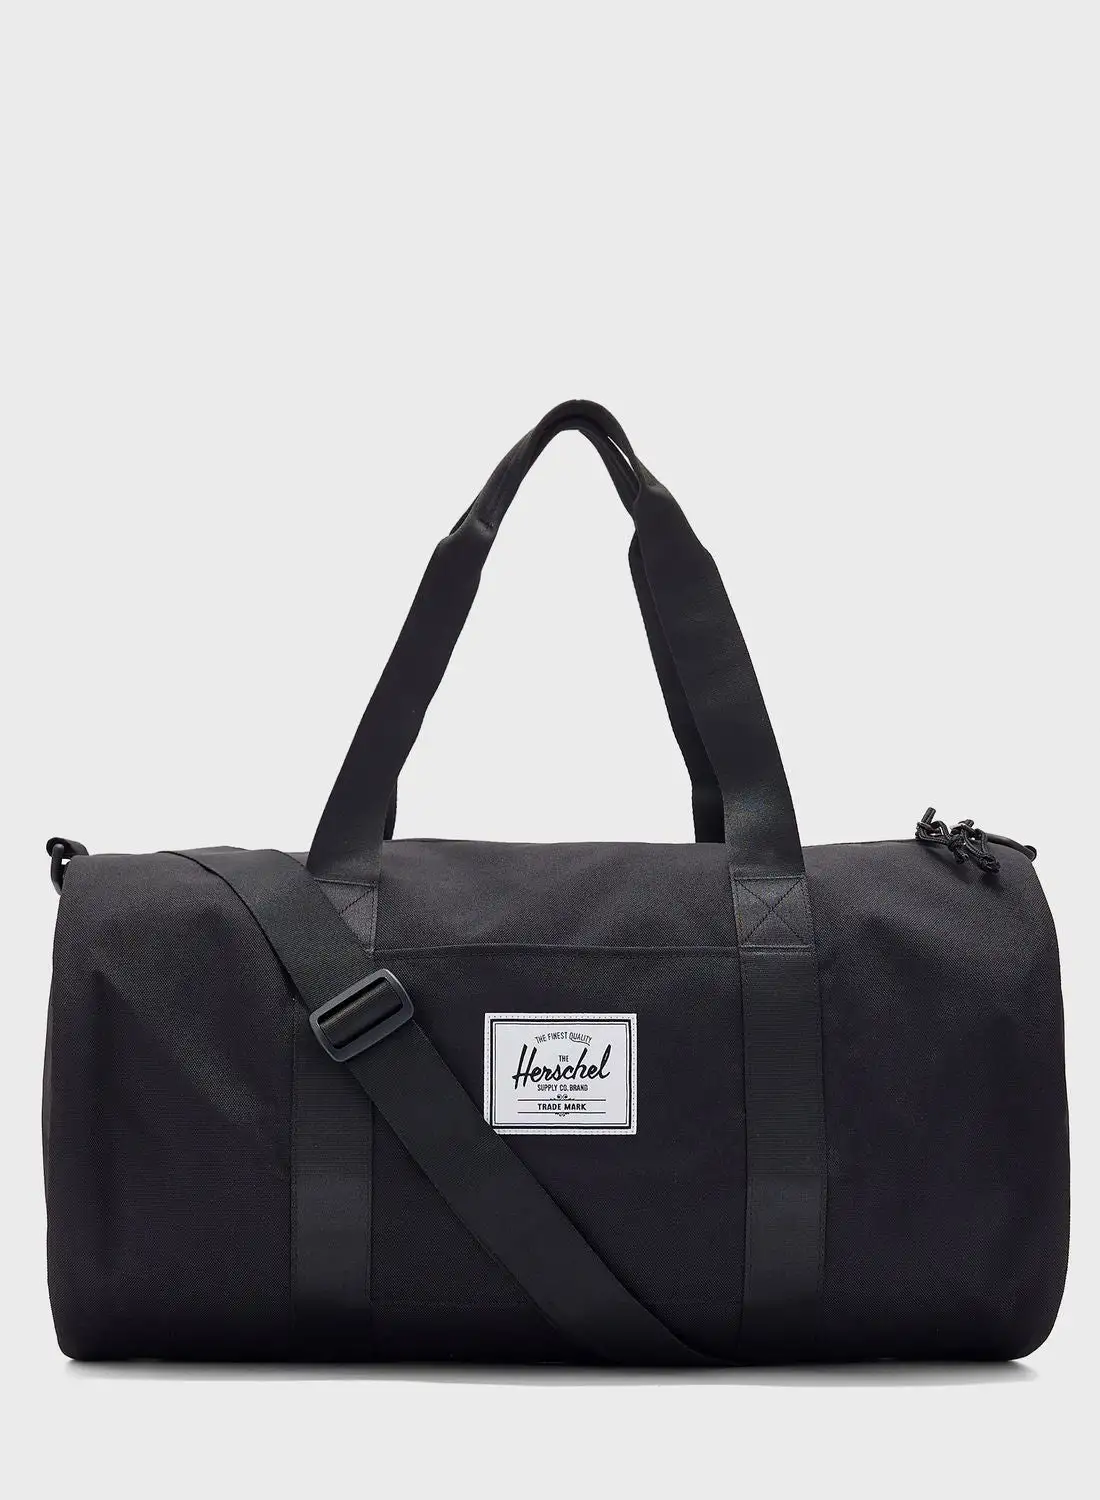 Herschel Top Handle Duffel Bag